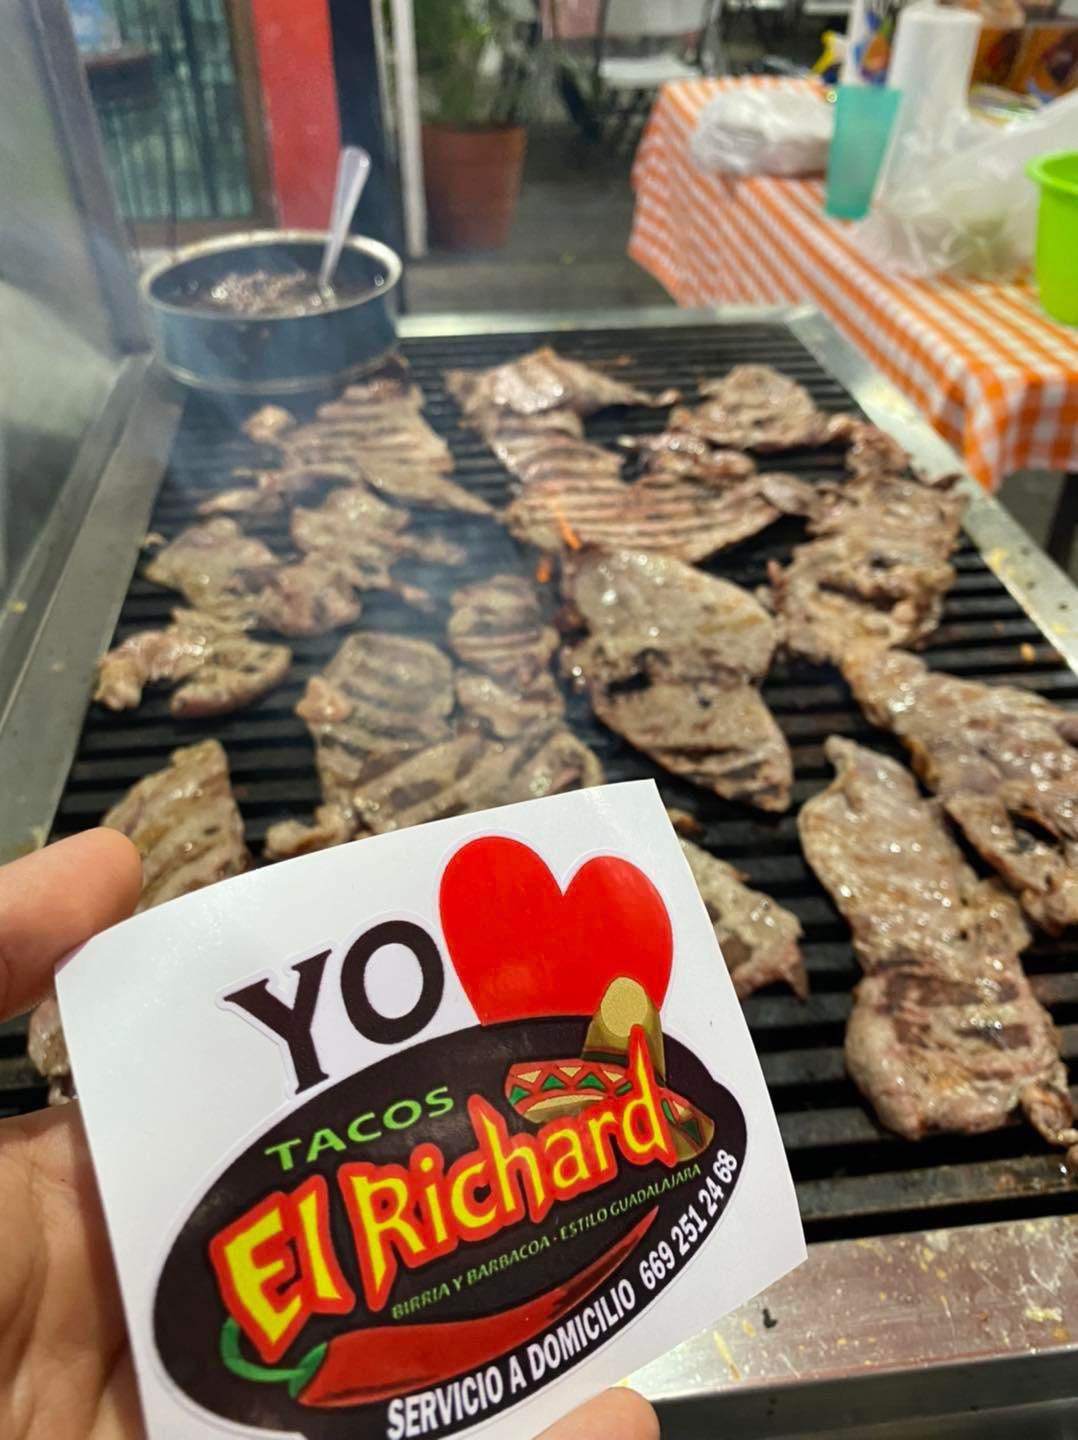 Tacos El Richard